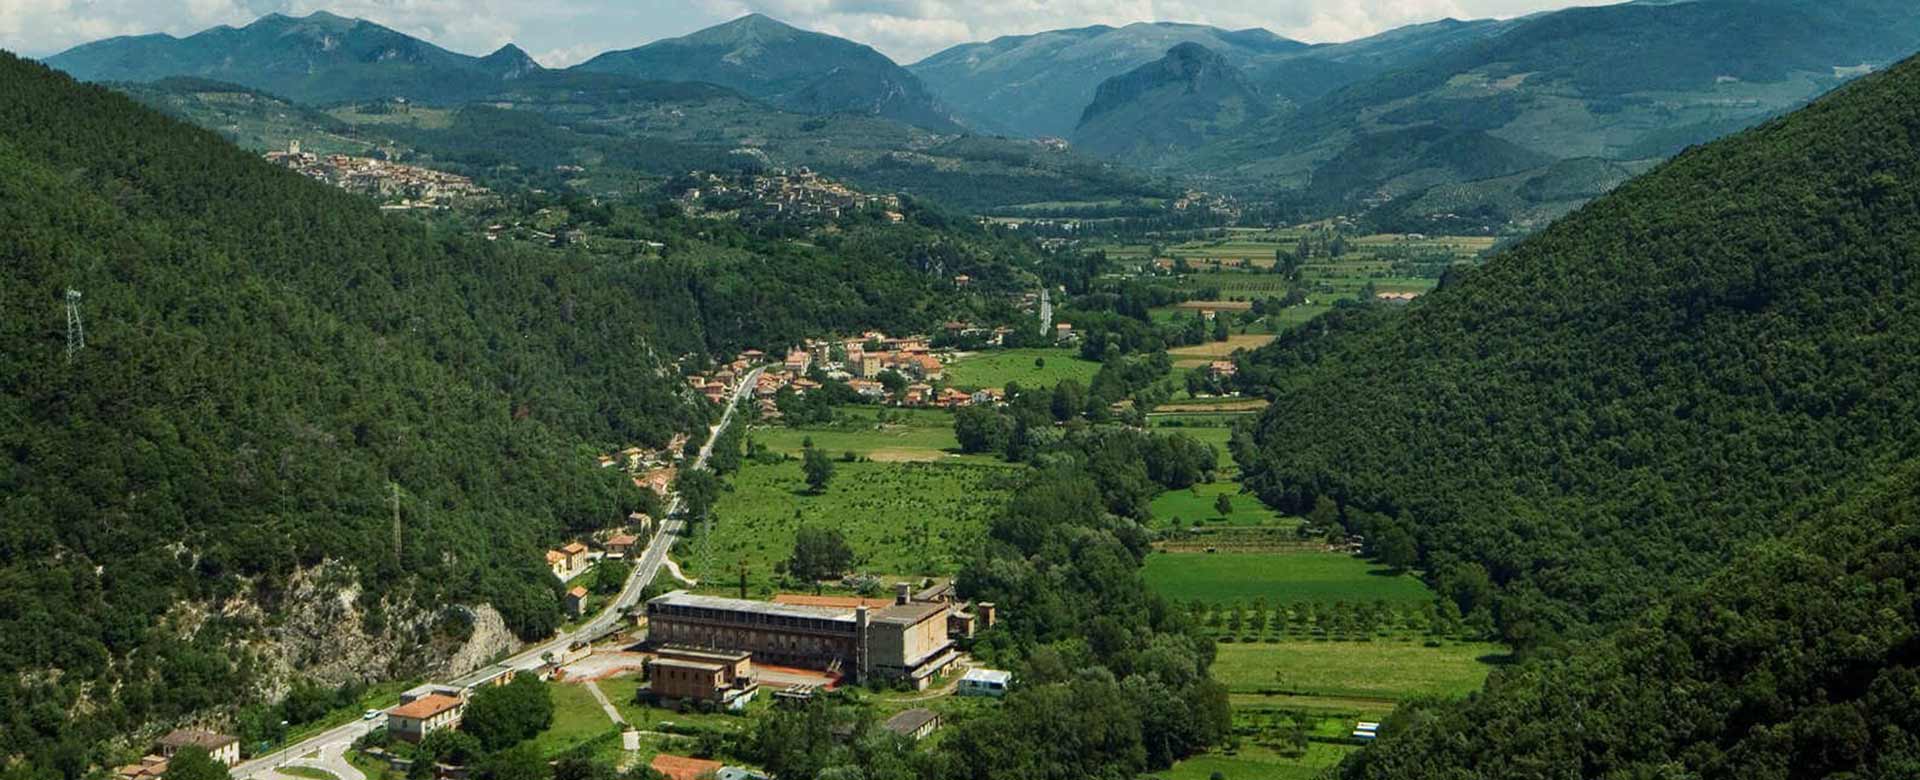 Una panoramica dall’alto della Valnerina, in Umbria